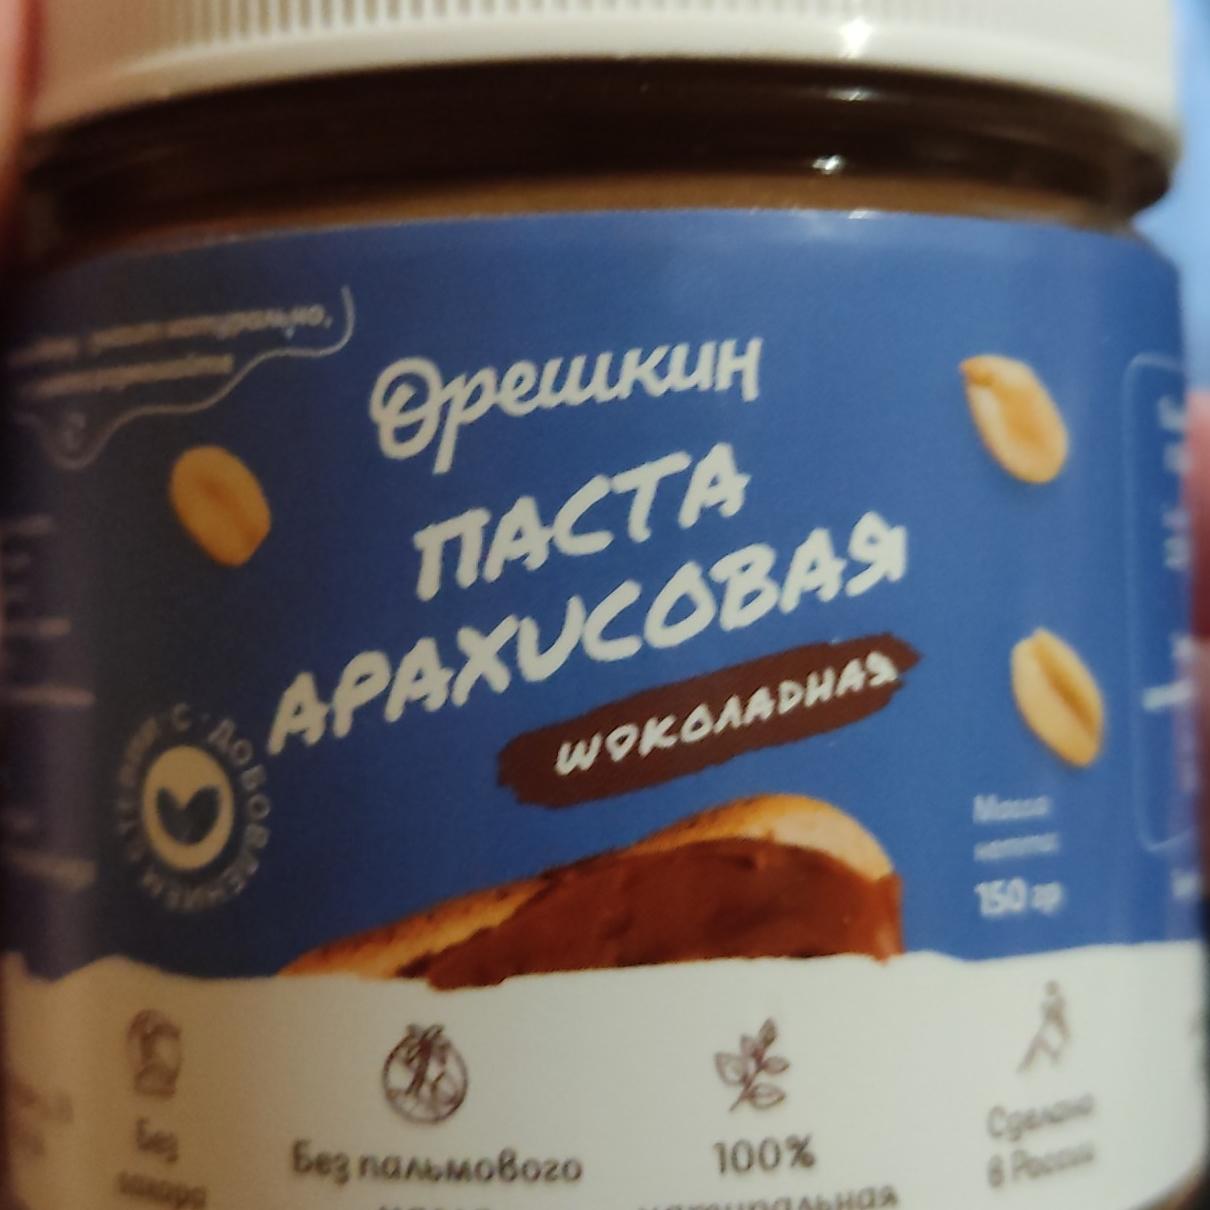 Фото - Паста арахисовая шоколадная Орешкин